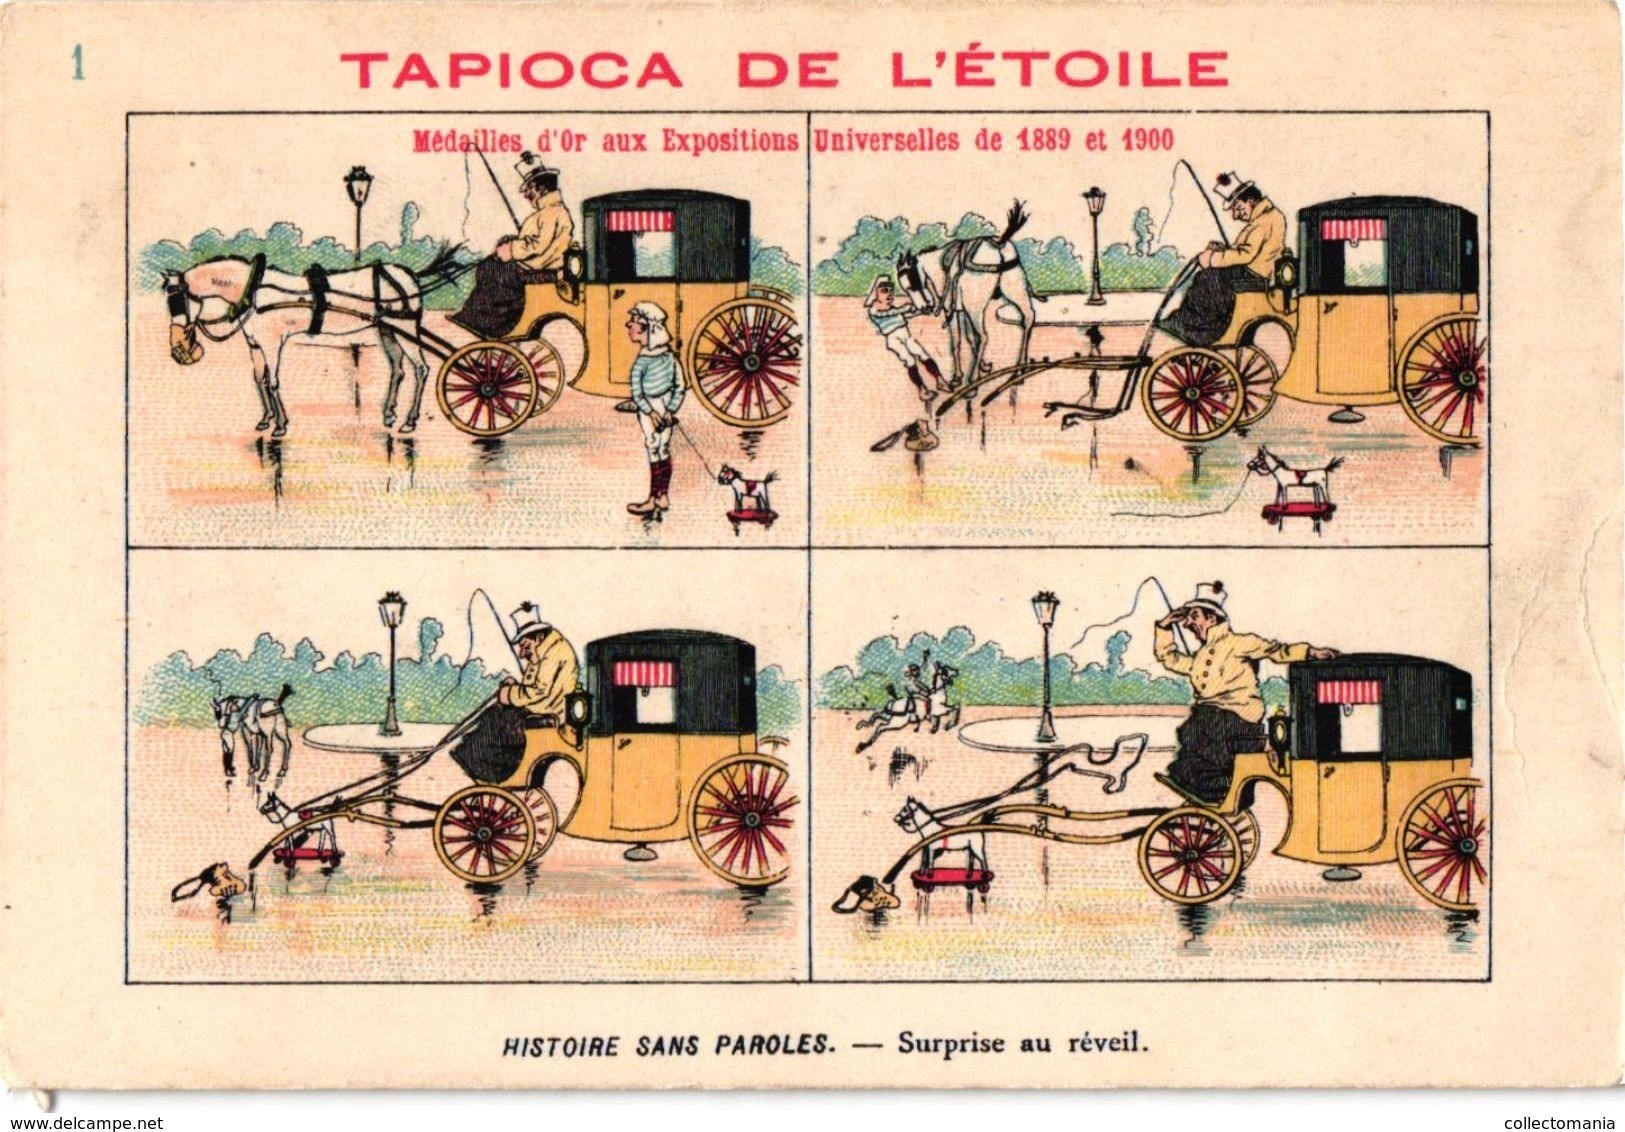 B.D. 19 cartes litho chromos TRES ANCIENS c1890, comme bandes dessinés, publicitaires Tapioca;  COURBE ROUZET